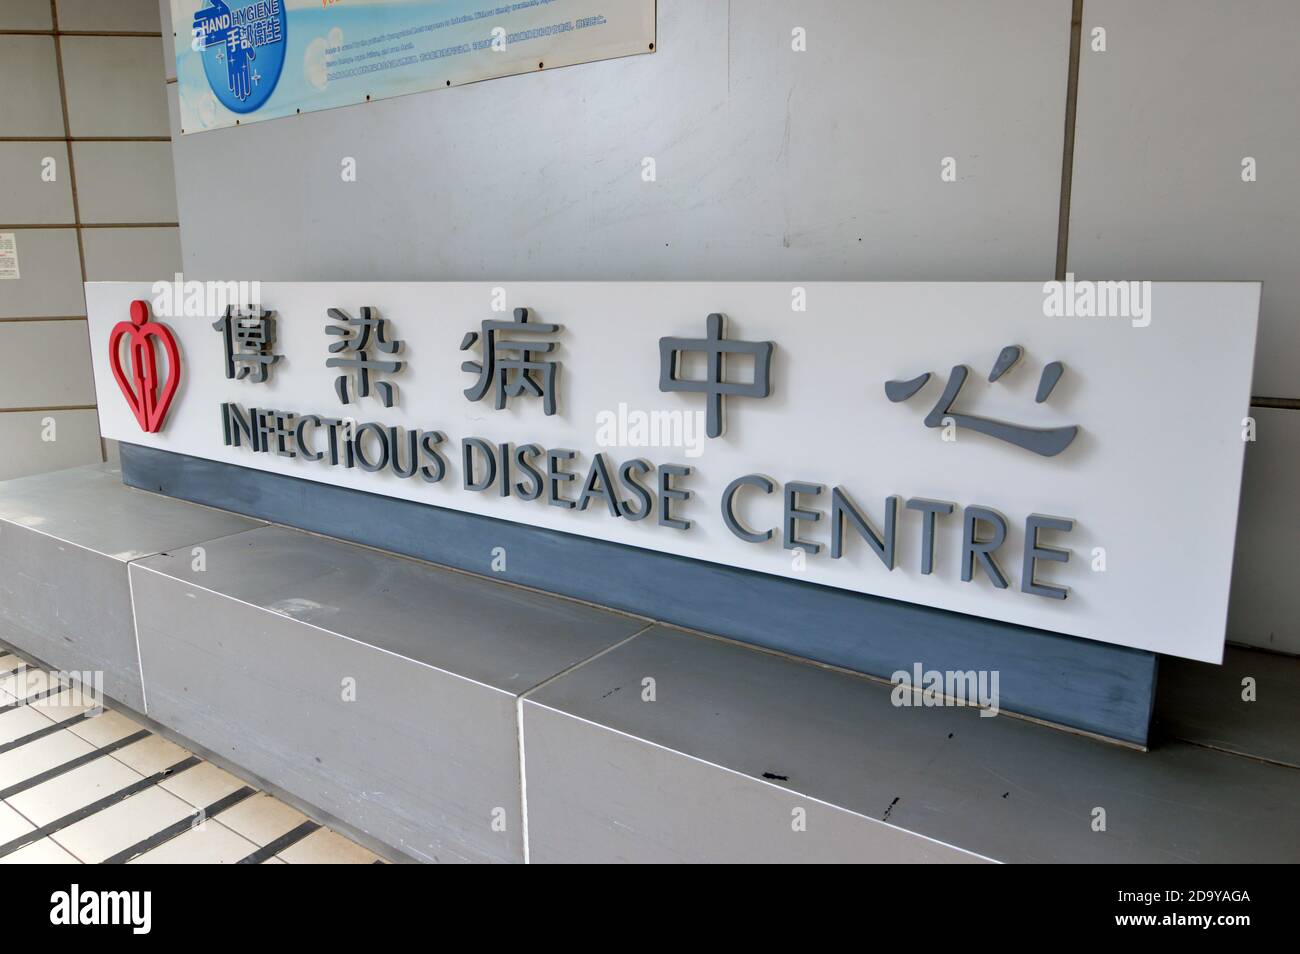 Señalización en el Centro de Enfermedades Infecciosas (傳染病中心) en el Hospital Princess Margaret, el centro de enfermedades infecciosas designado por Hong Kong Foto de stock